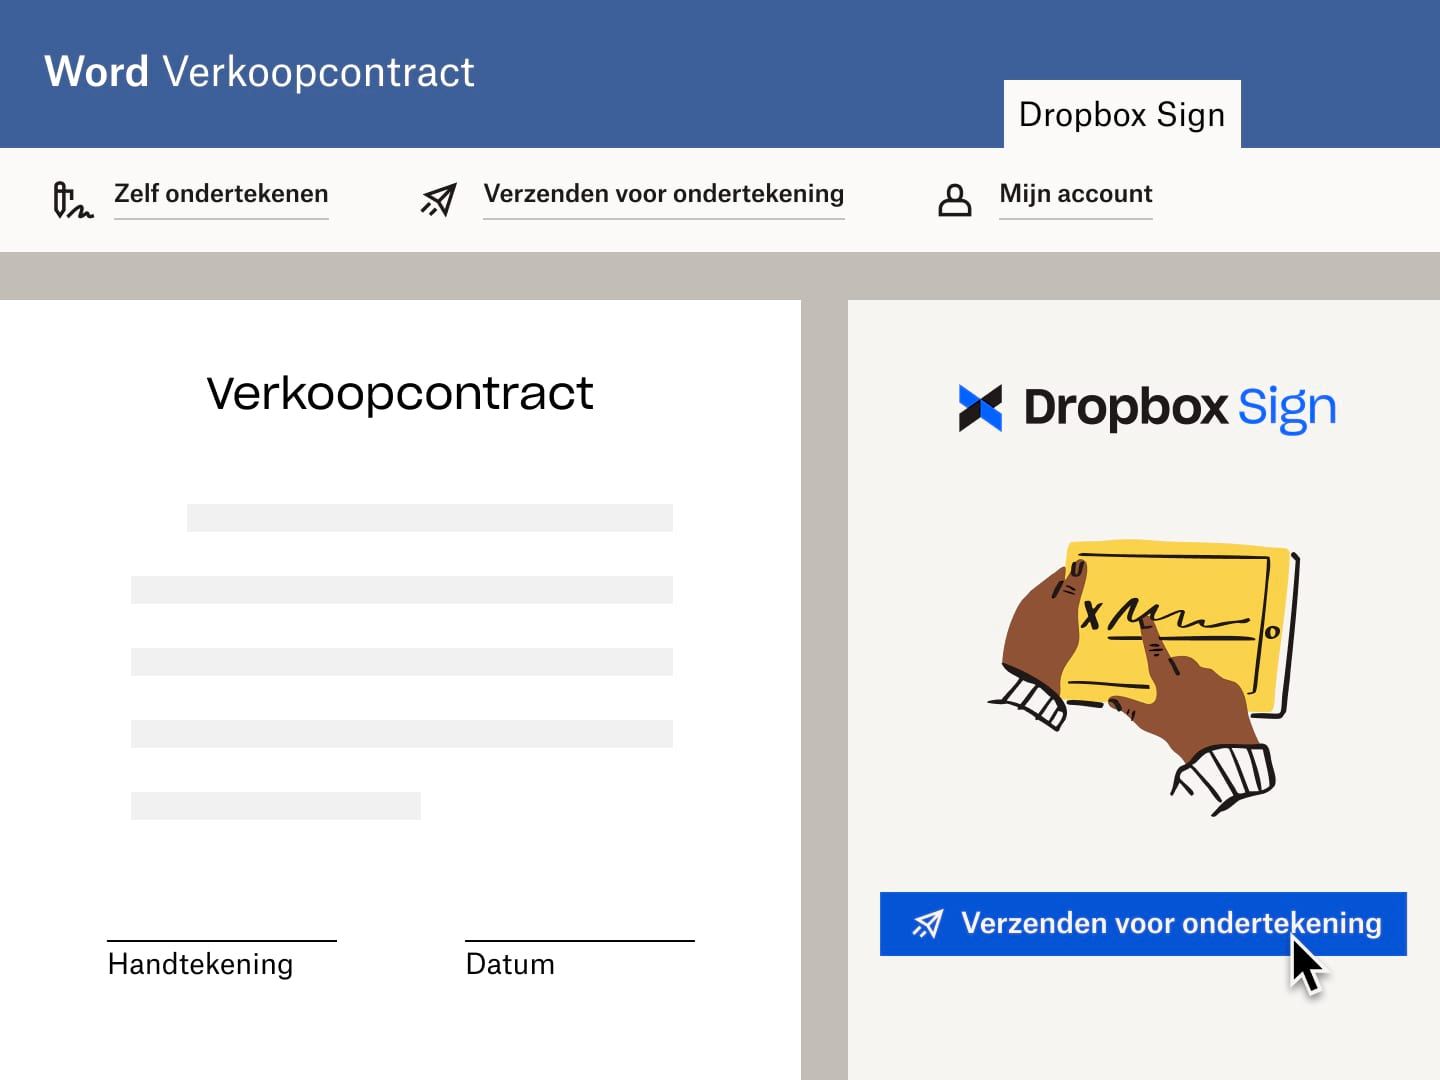 Een gebruiker verzendt een verkoopcontract in Microsoft Word met een handtekeningaanvraag van Dropbox Sign